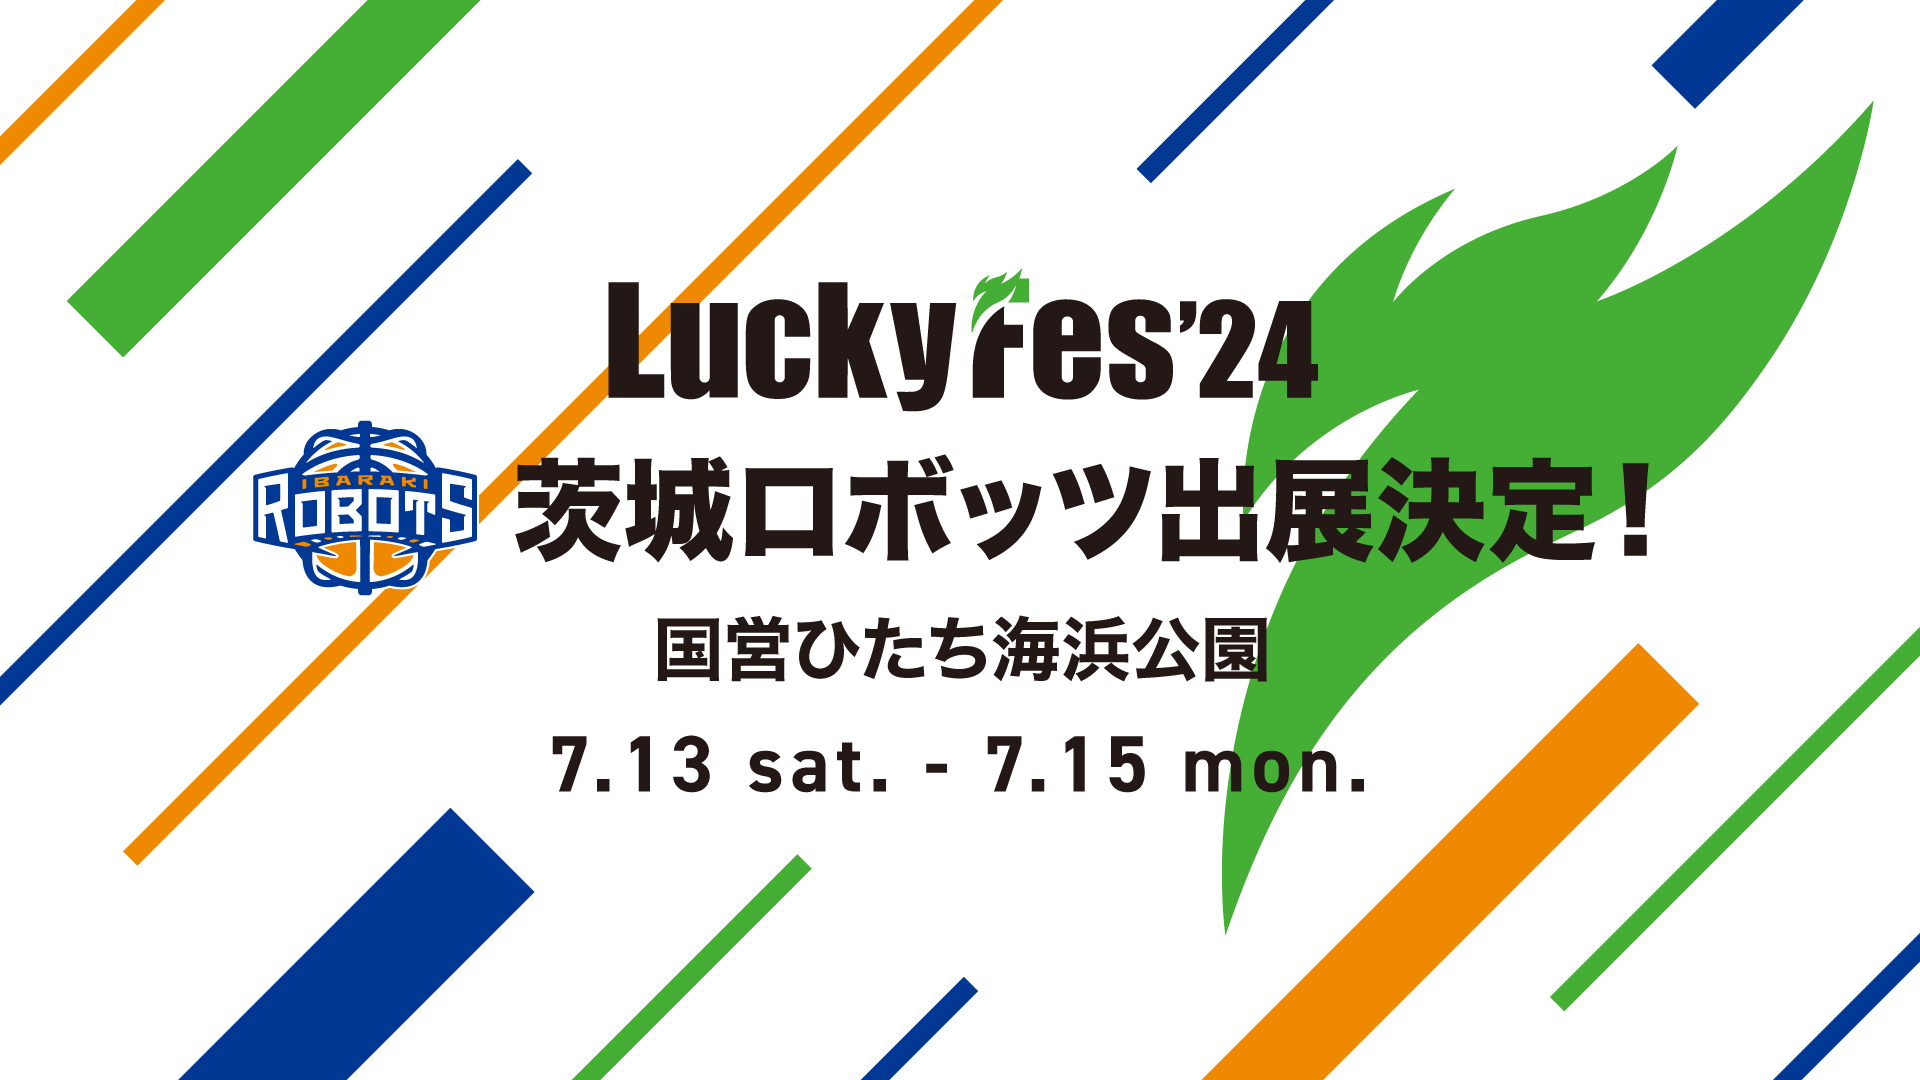 7/8更新】「LuckyFes'24」茨城ロボッツ 出展決定！ | 茨城ロボッツ